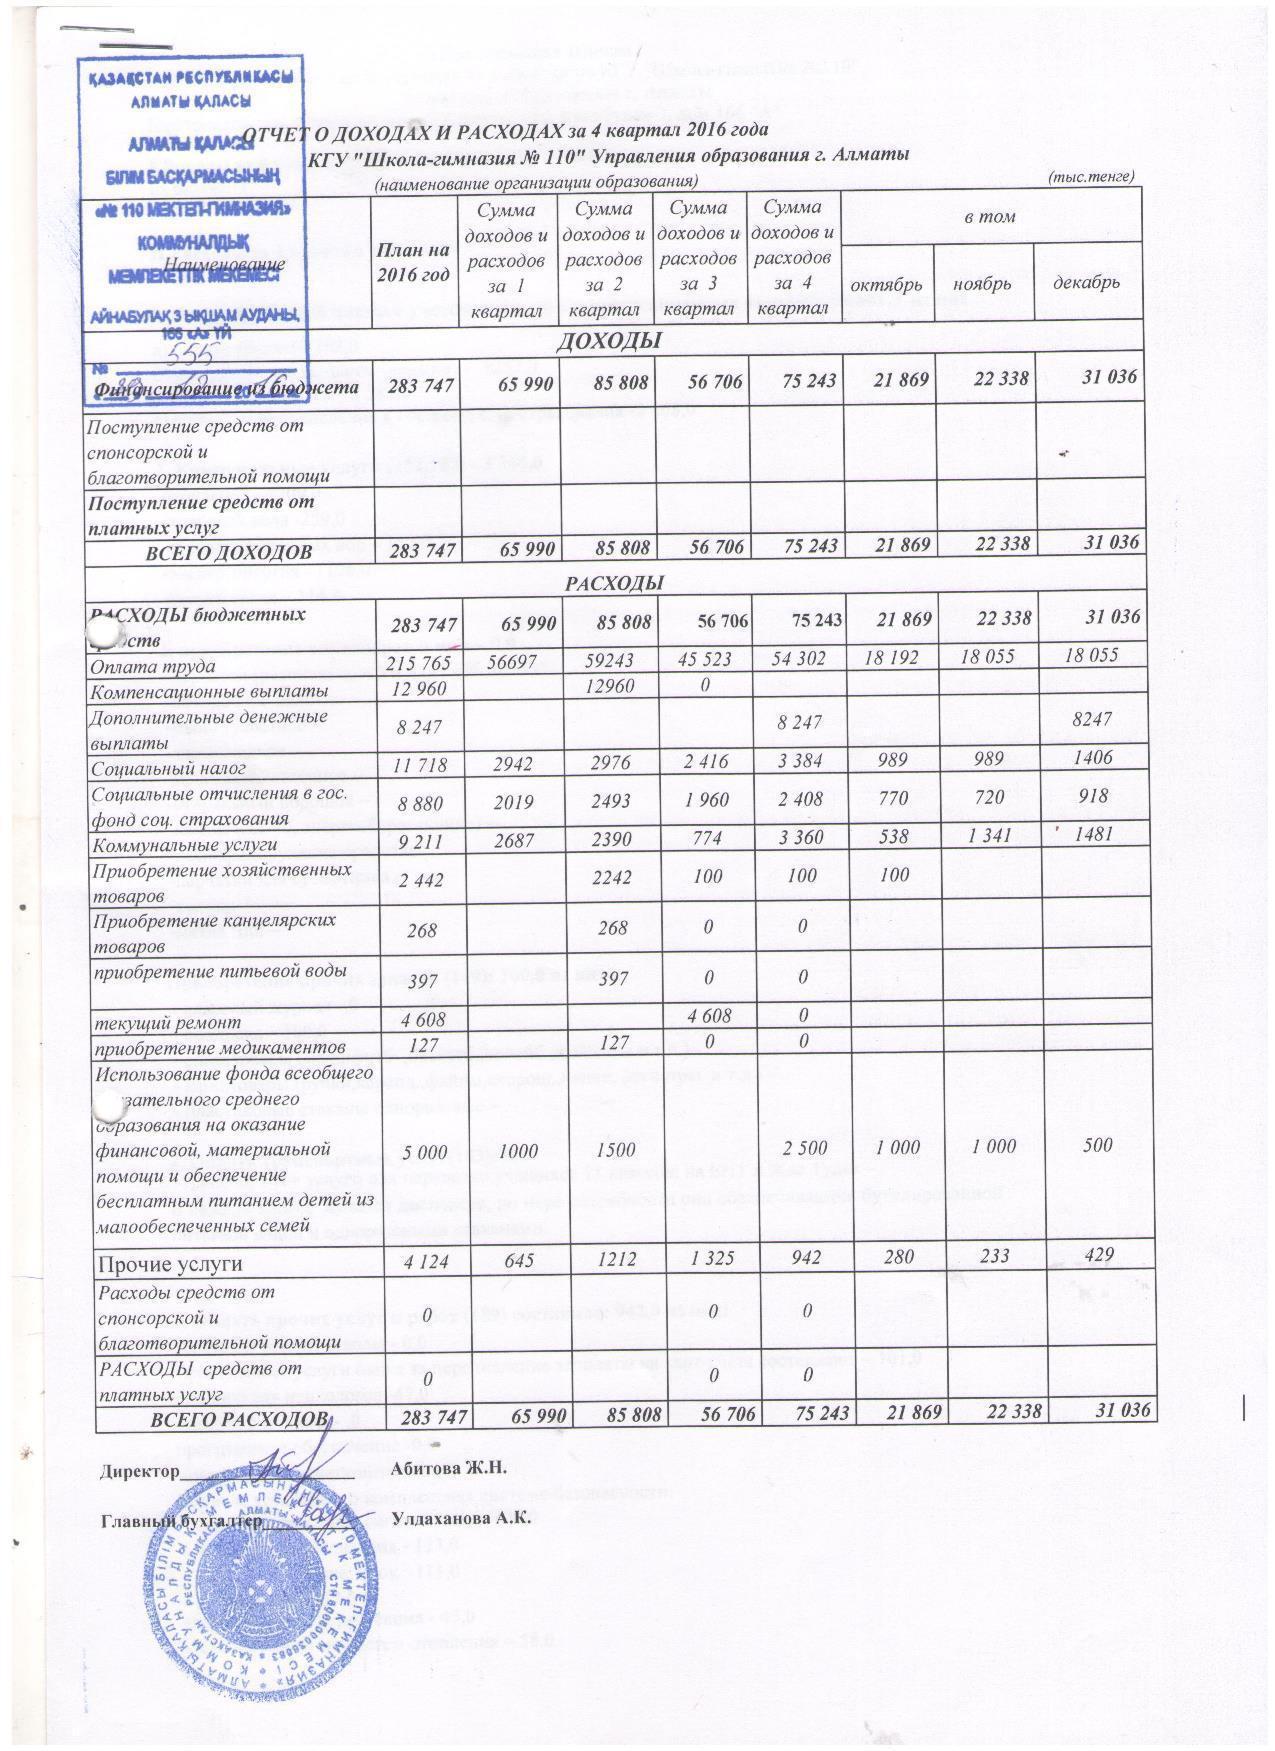 Отчет о доходах и расходах за 4 Квартал 2016 и пояснительная записка